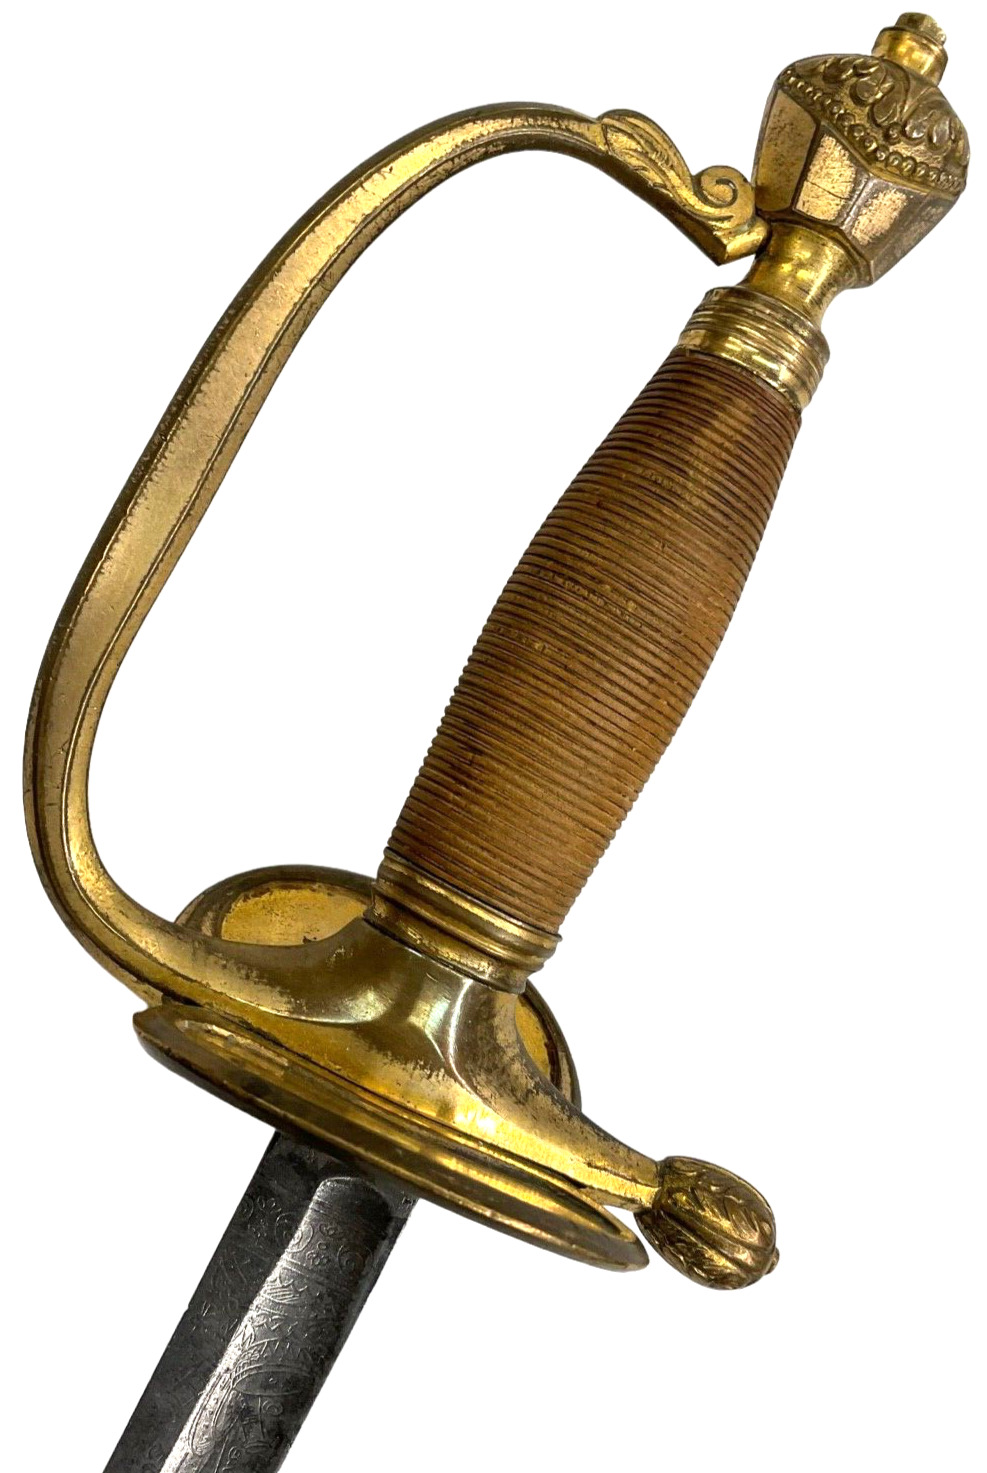 Victorian British 1796 Infantry Piquet Weight Sword 27 inch blade